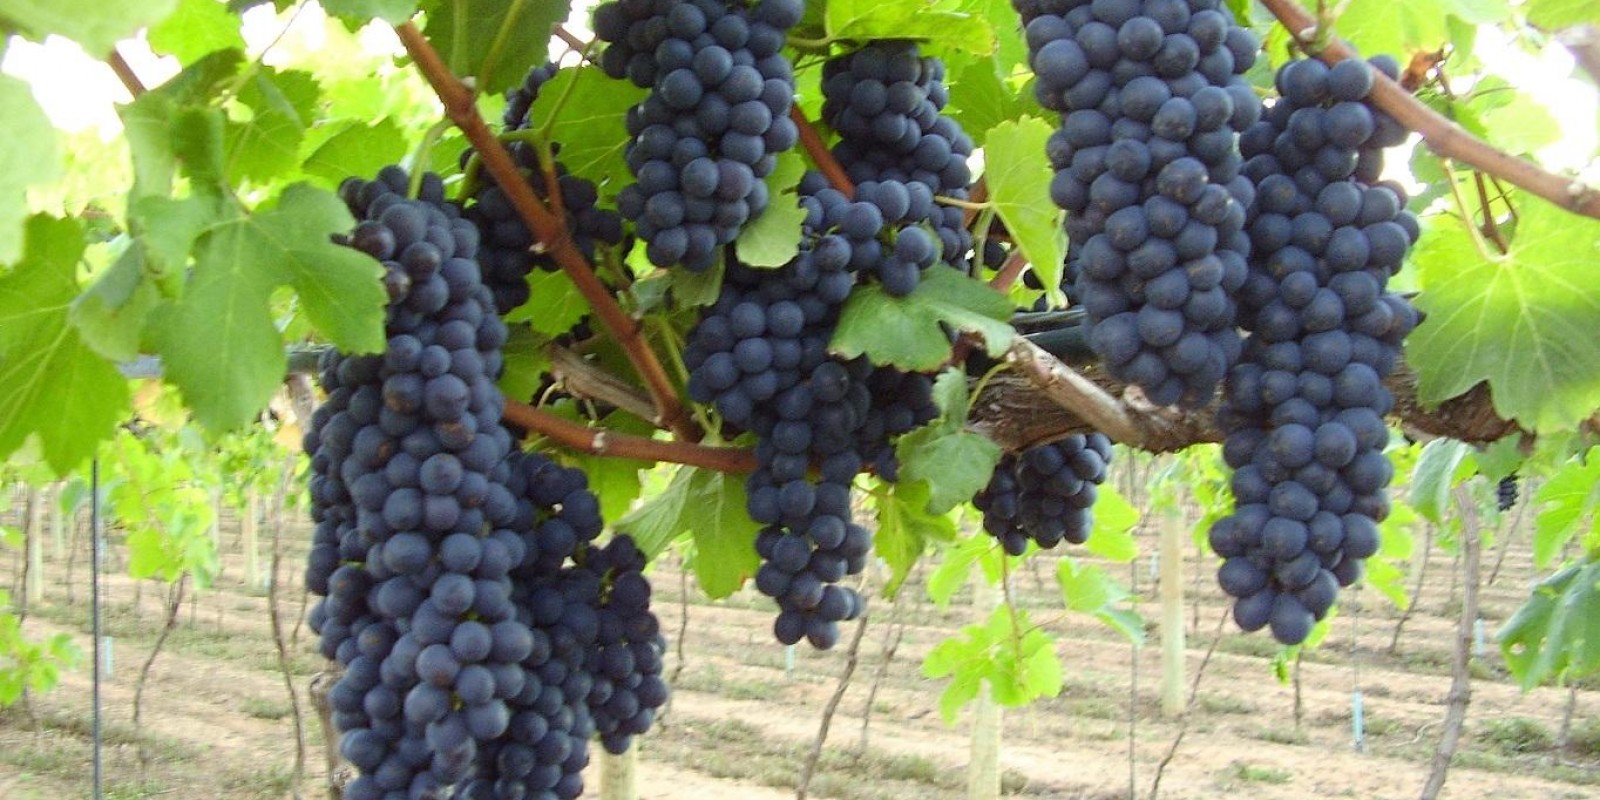 Epamig e Embrapa Instrumentação firmam parceria para projetos em vitivinicultura de precisão